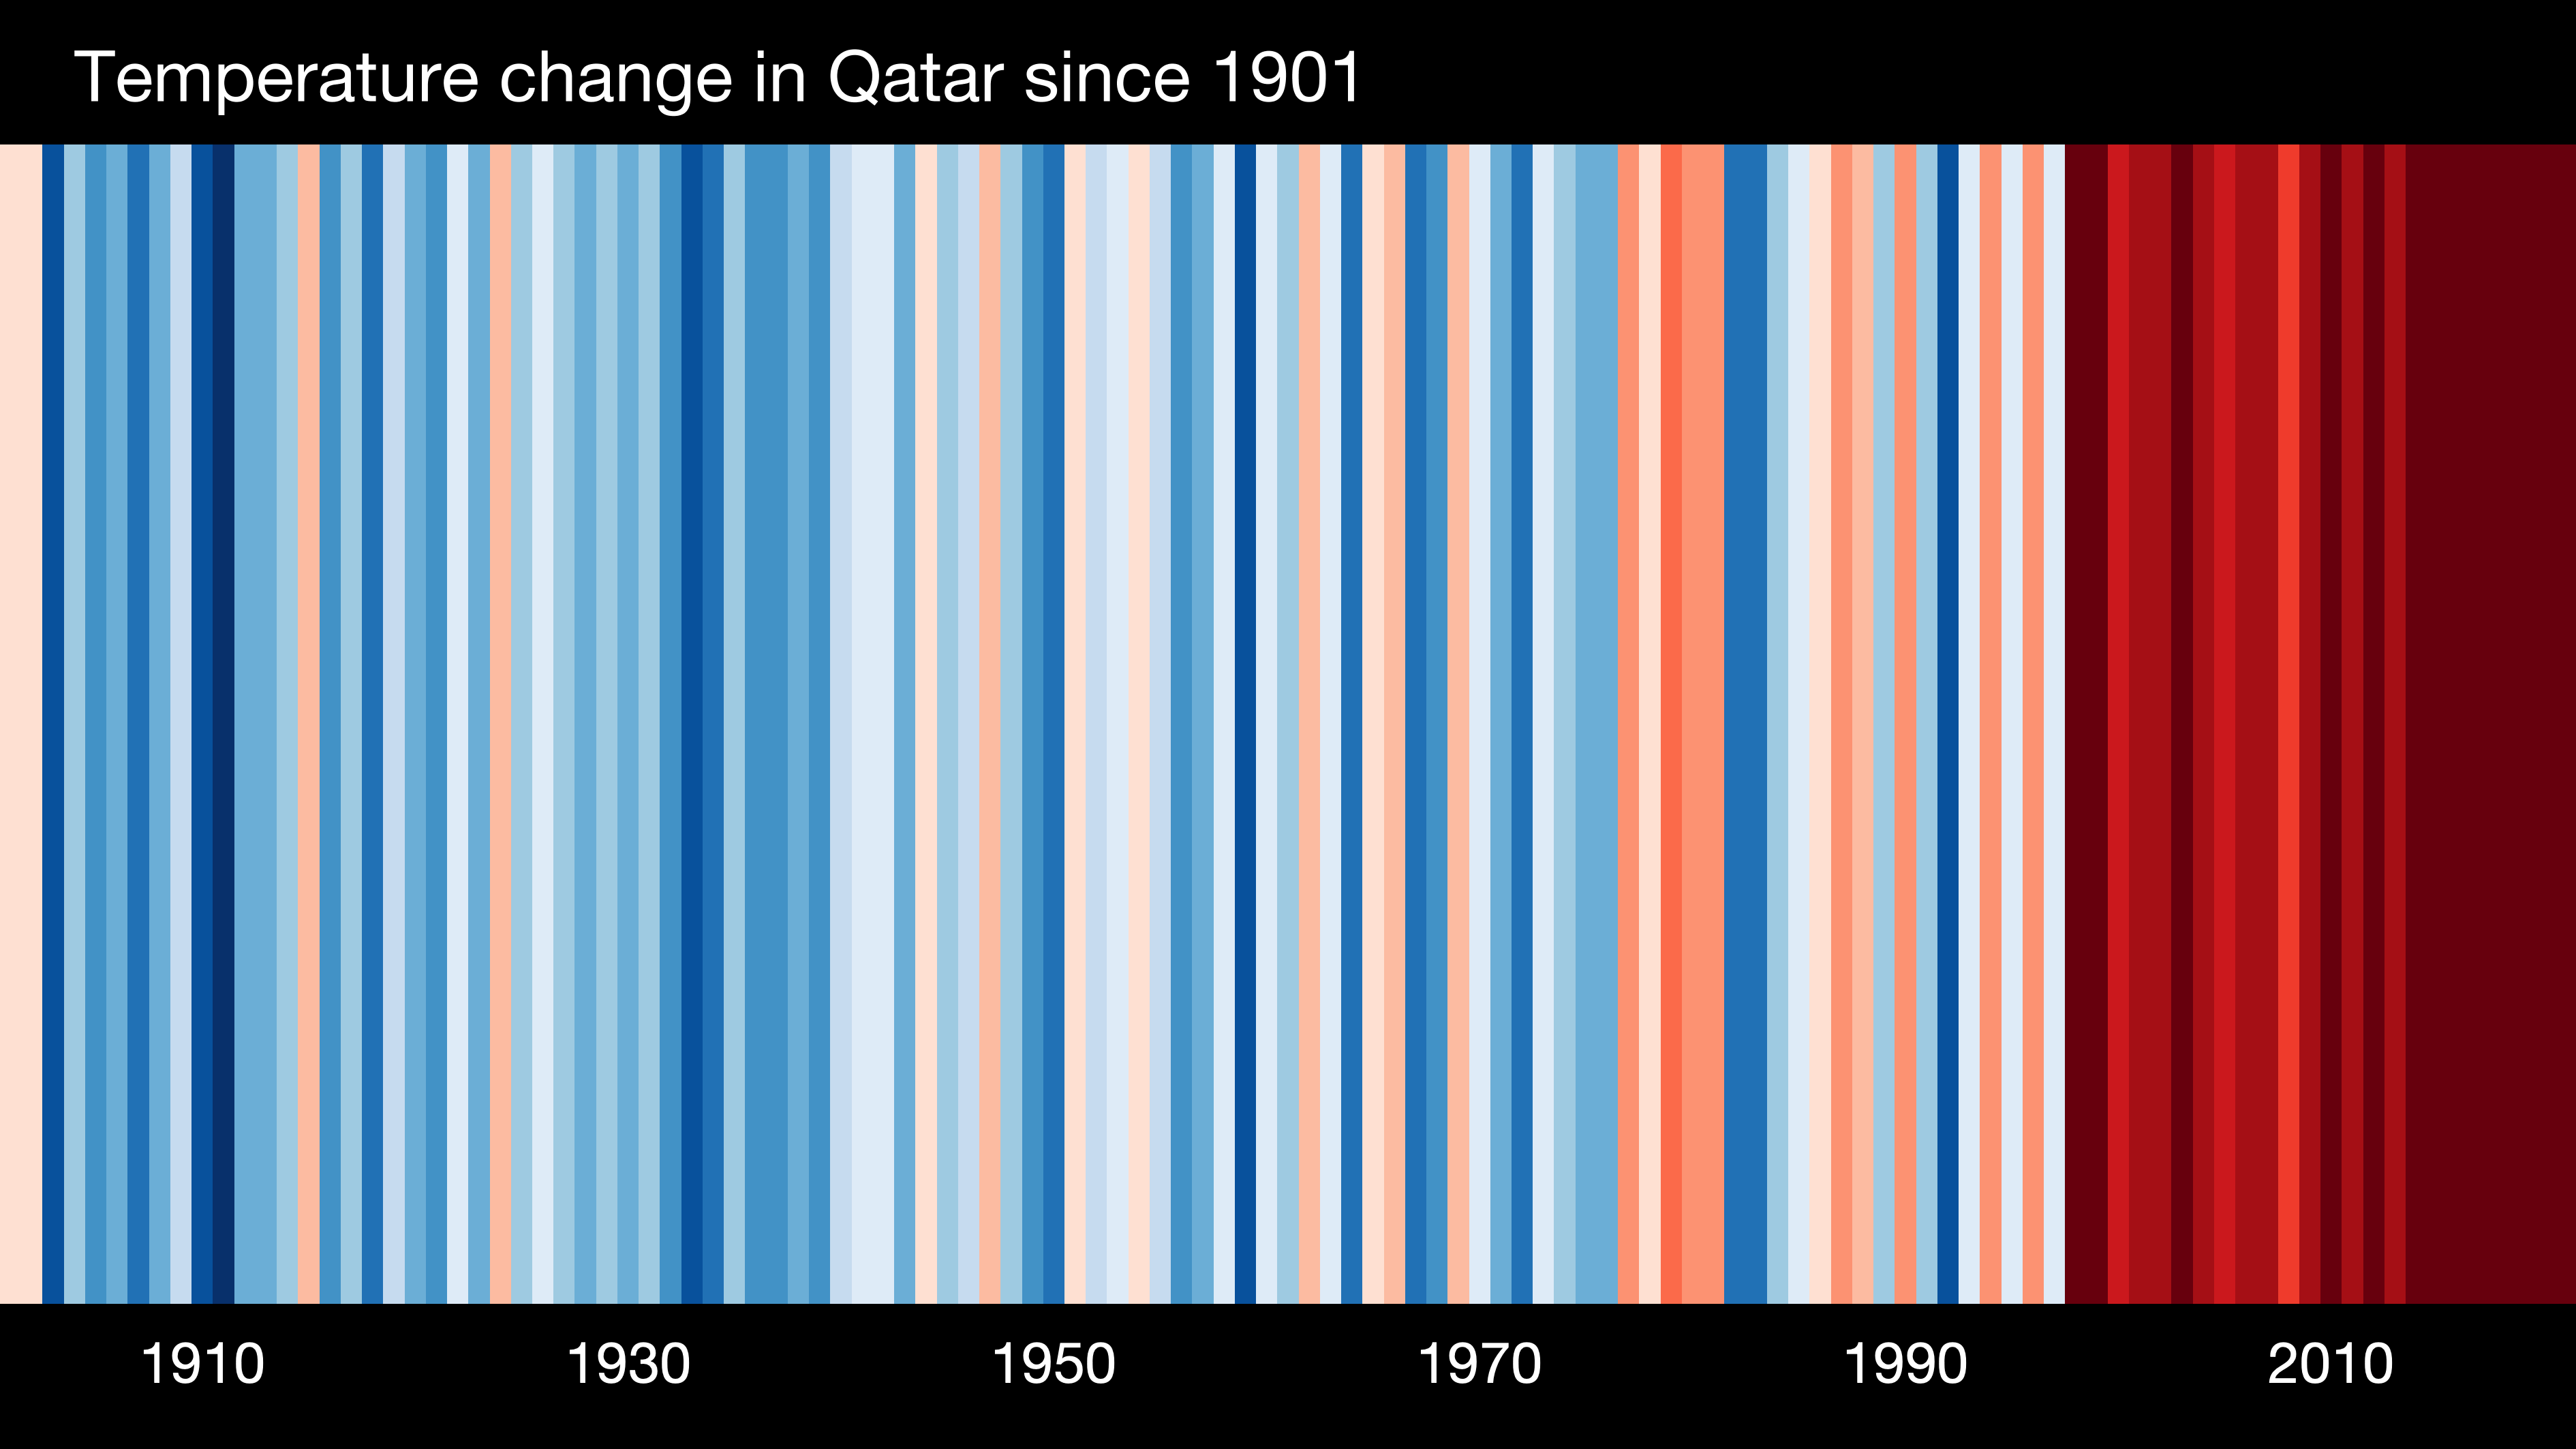 Le bilan carbone de la Coupe du monde de football 2022 qui démarre à la fin de ce mois de novembre au Qatar sera sans doute bien plus lourd qu’annoncé par les organisateurs. « Warming stripes » pour le Qatar, entre 1901 et 2021. Chaque bandelette correspond à une année. La couleur reflète l'intensité de l'anomalie des températures mesurées par rapport à l'ère préindustrielle. Le bleu pour les plus froides que la moyenne, et le rouge pour les années les plus chaudes que la normale. © ShowYourStripes.info